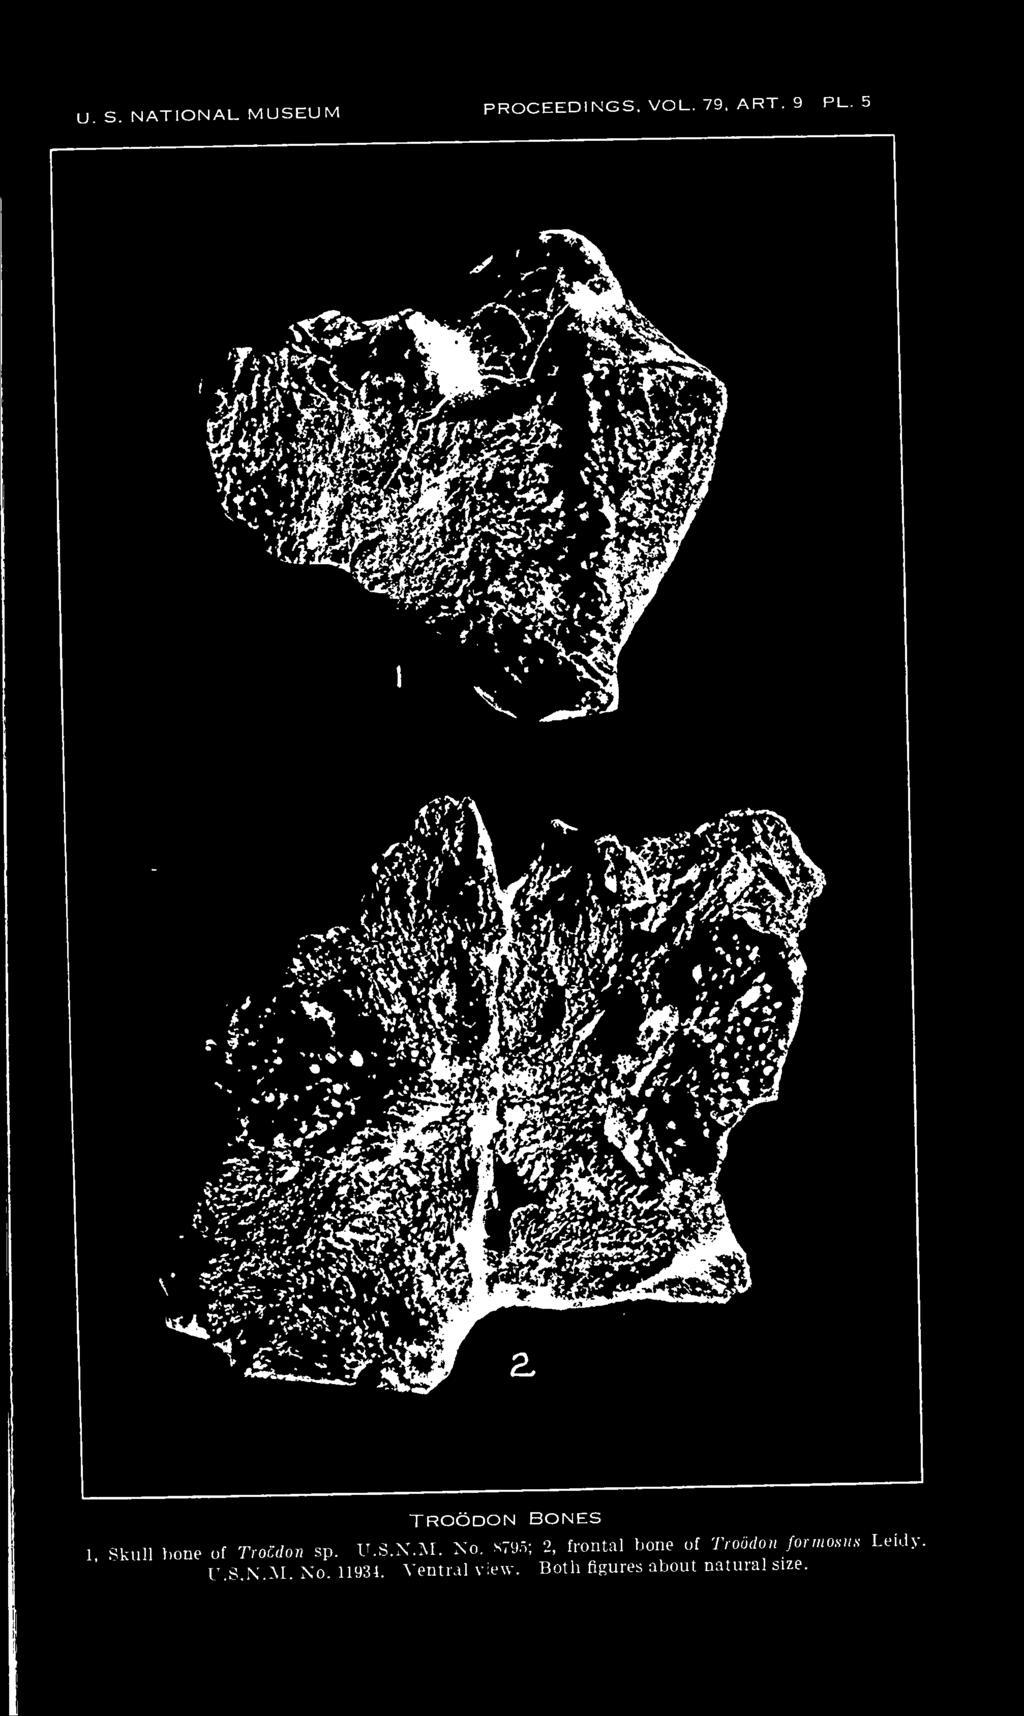 8795; 2, frontal bone of Troodon